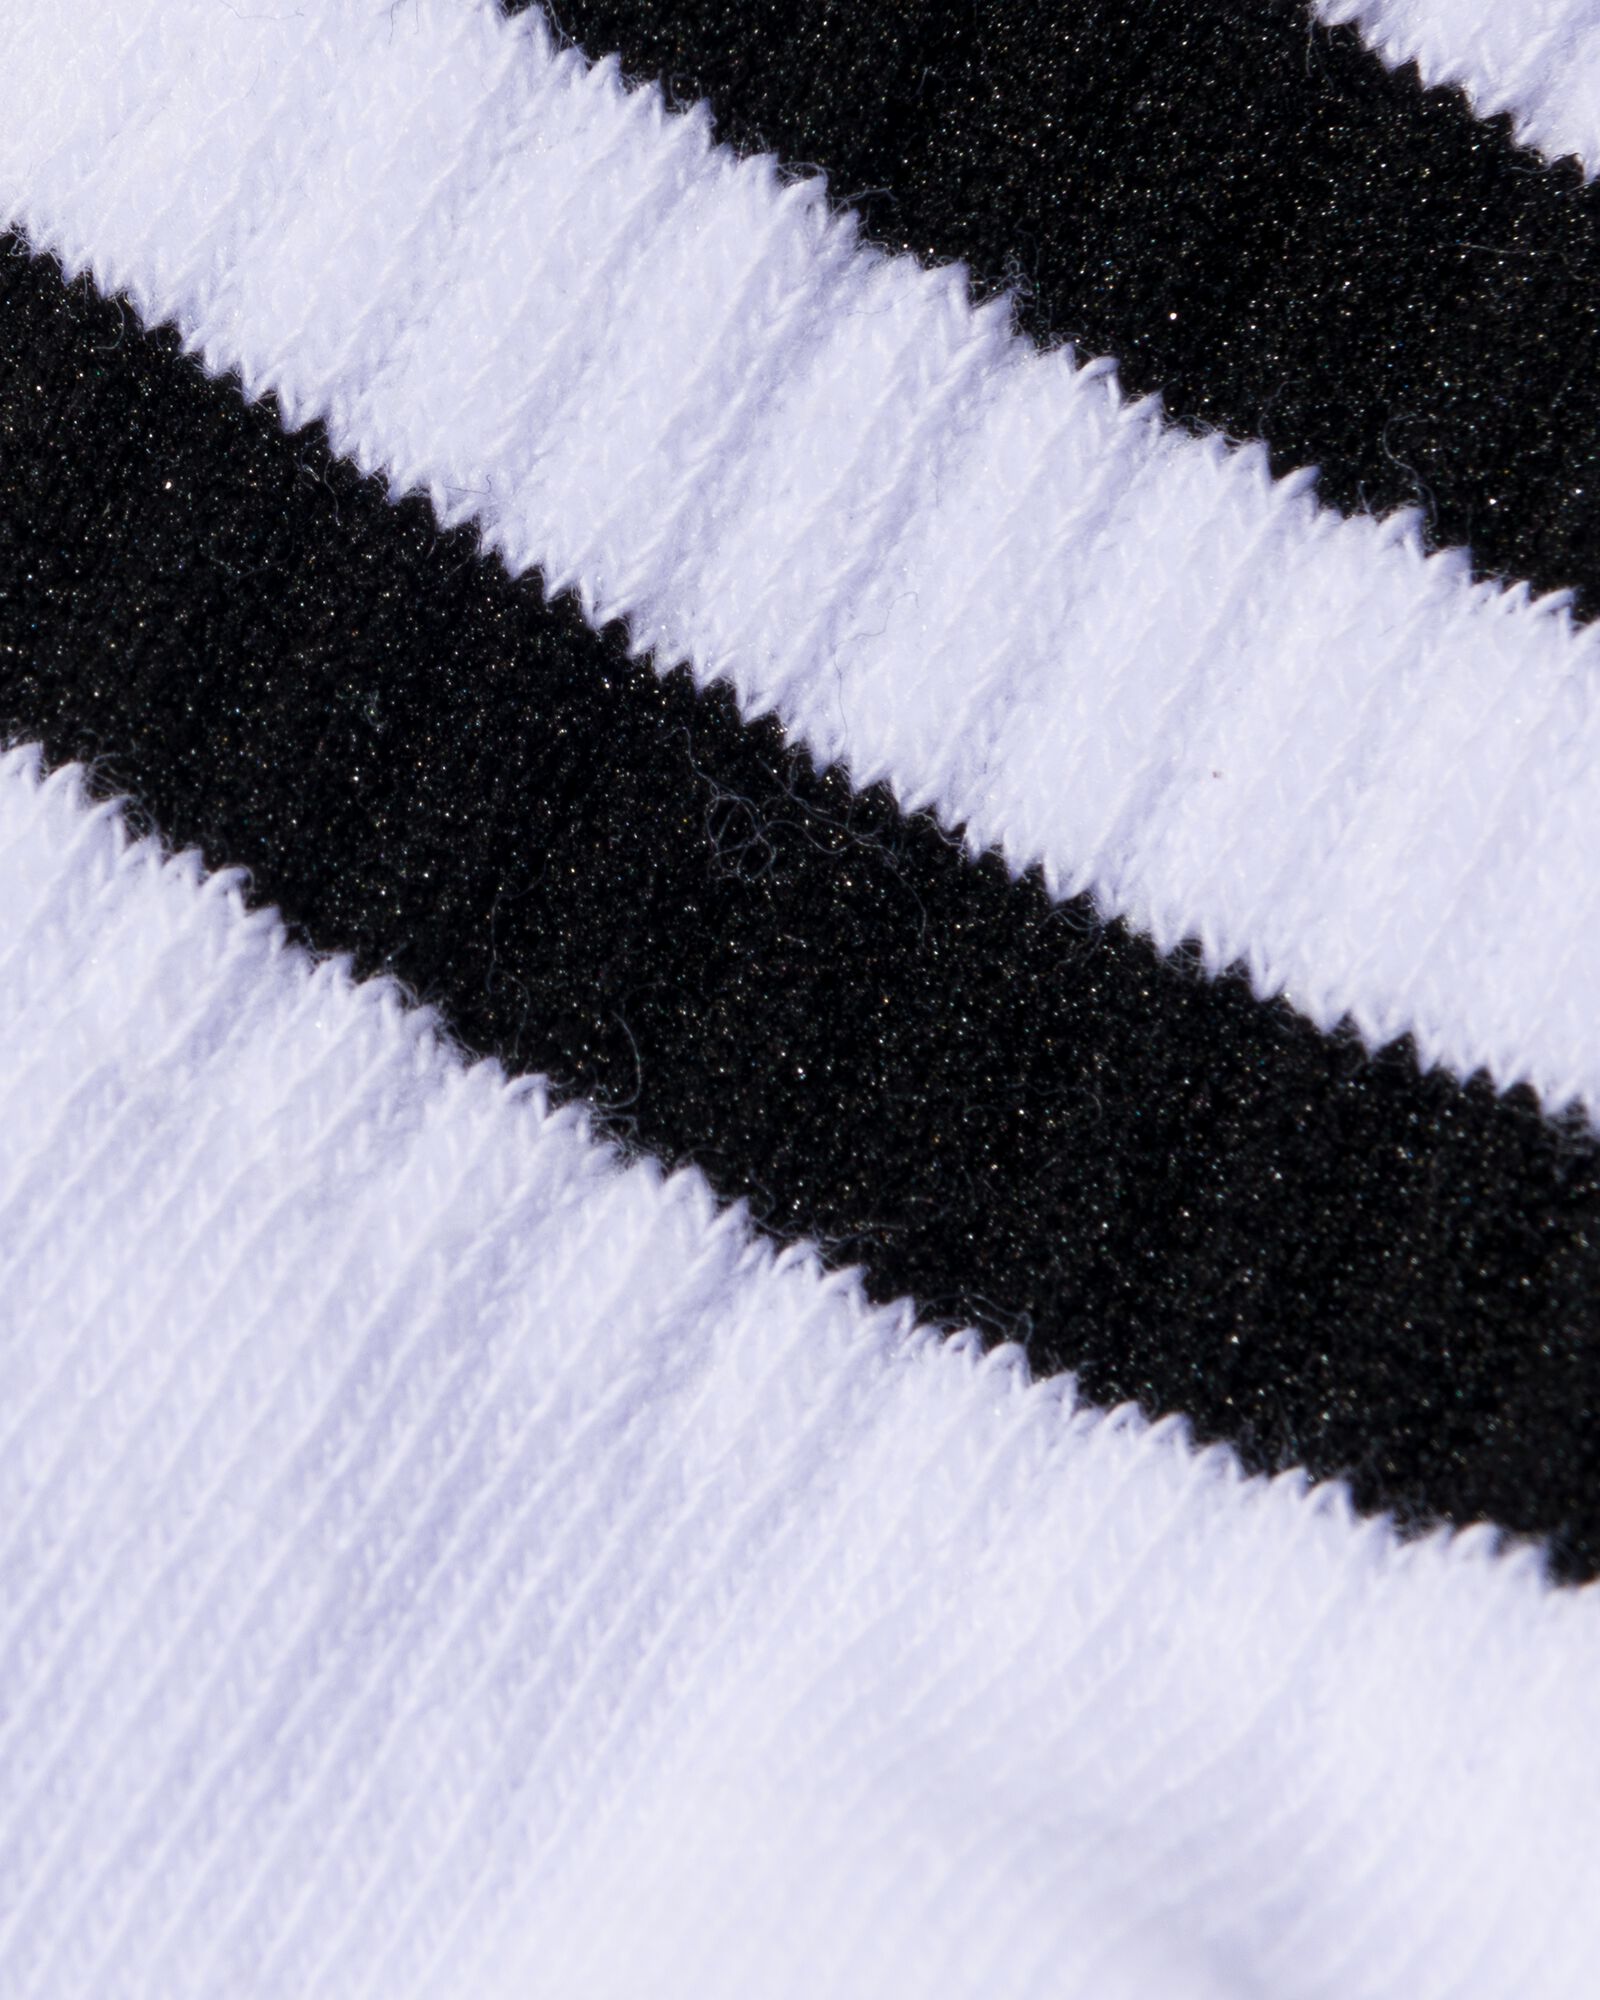 2 paires de socquettes femme en tissu éponge noir - HEMA